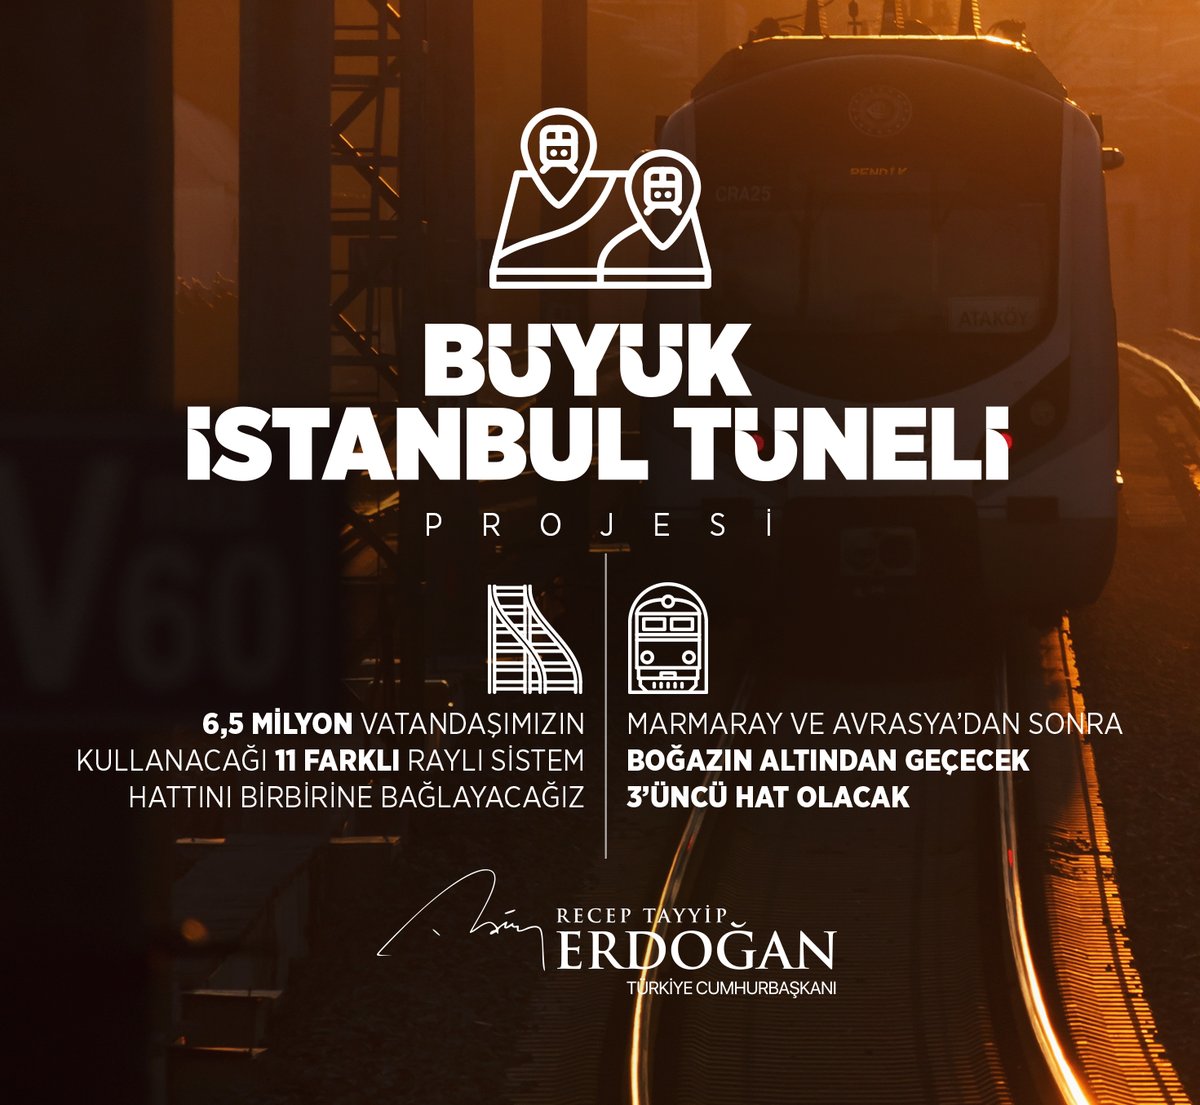 Son 21 yılda, sadece kamu yatırımlarıyla İstanbul'un emrine 812 milyar liralık bir kaynak verdik. Şimdi de Büyük İstanbul Tüneli Projemizi hayata geçiriyoruz.